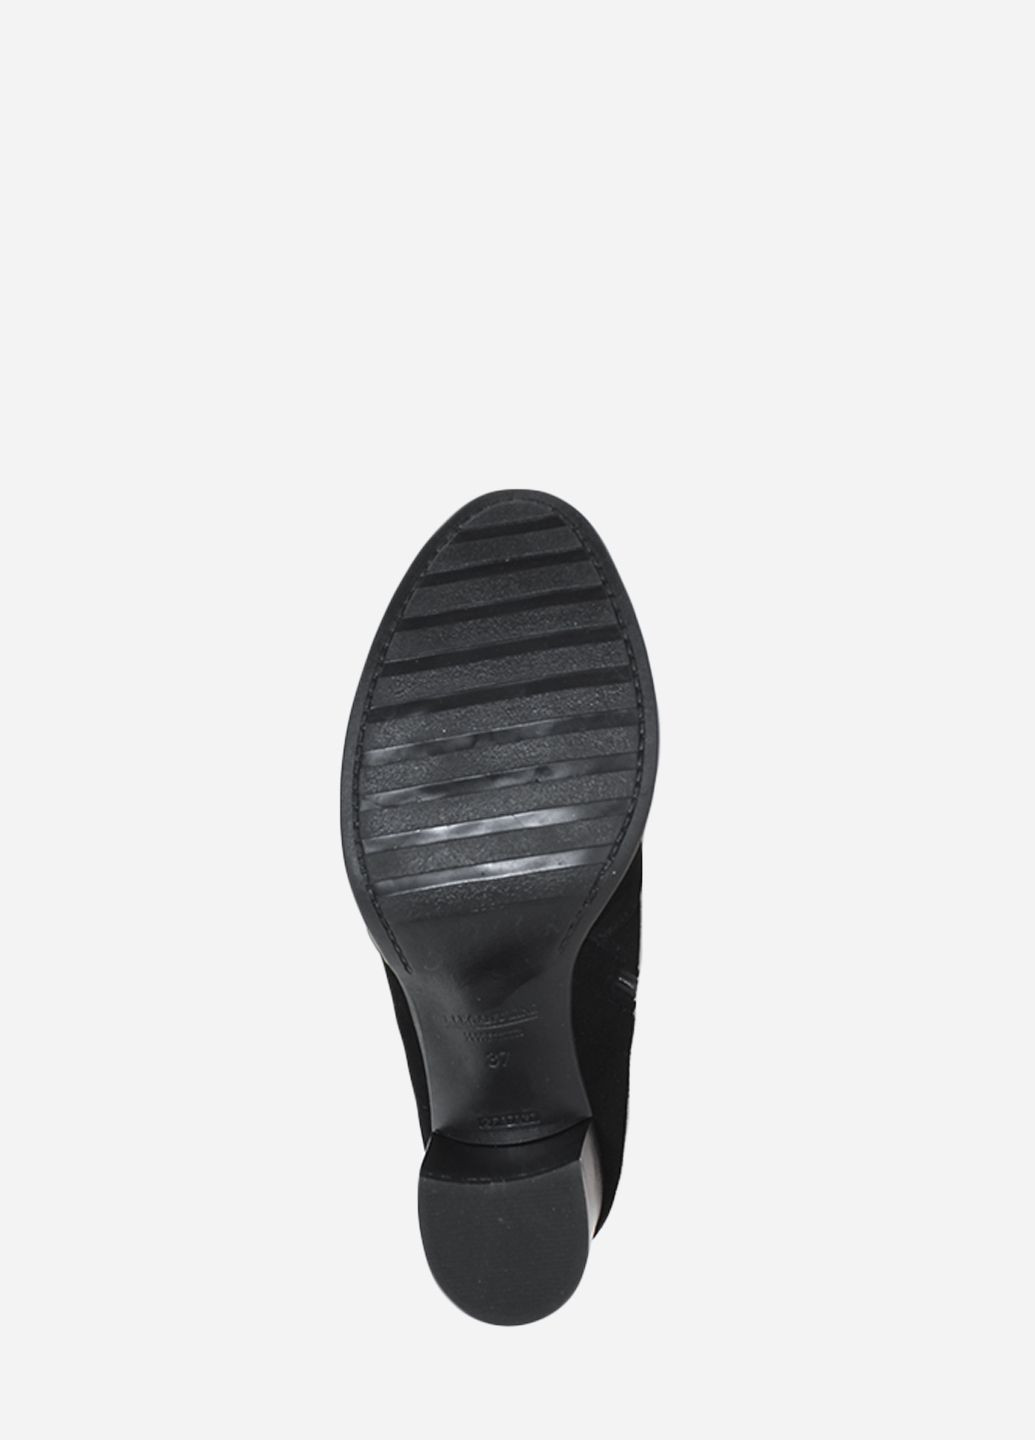 Осенние ботинки rk0676-11 черный Kseniya из натуральной замши